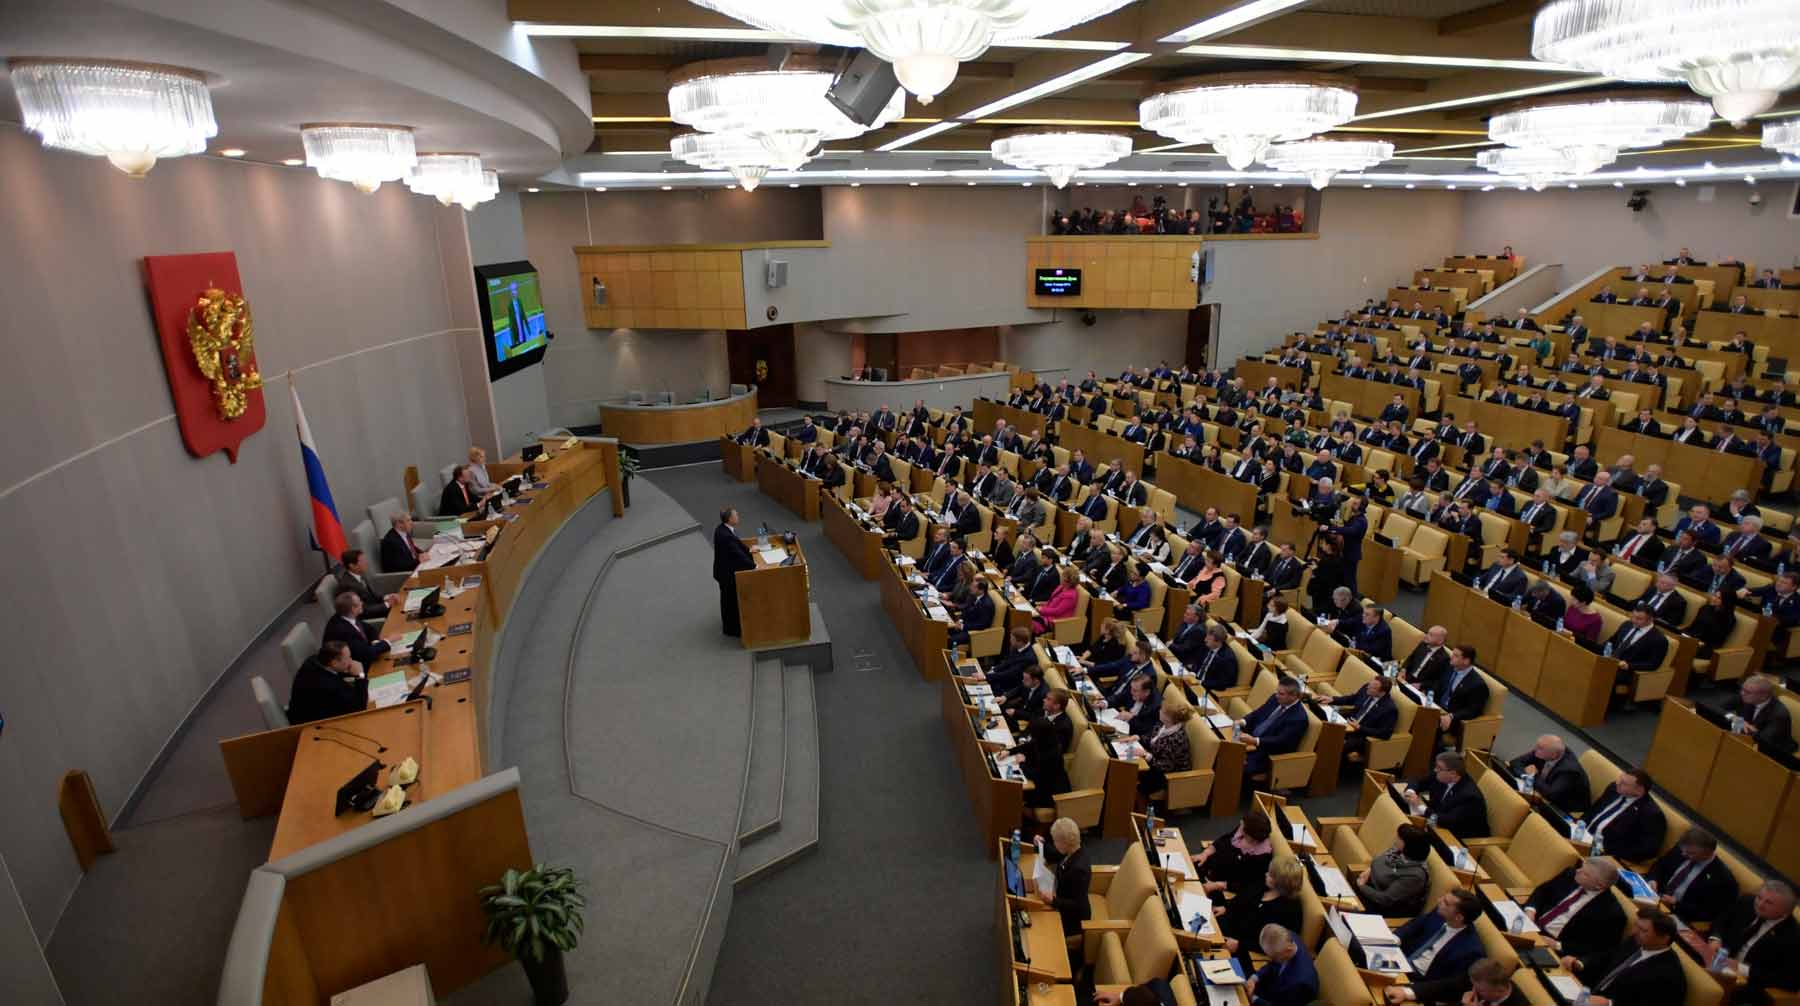 Сергей Кириенко презентовал новый образовательный проект для будущих народных избранников Фото: © Global Look Press / Komsomolskaya Pravda